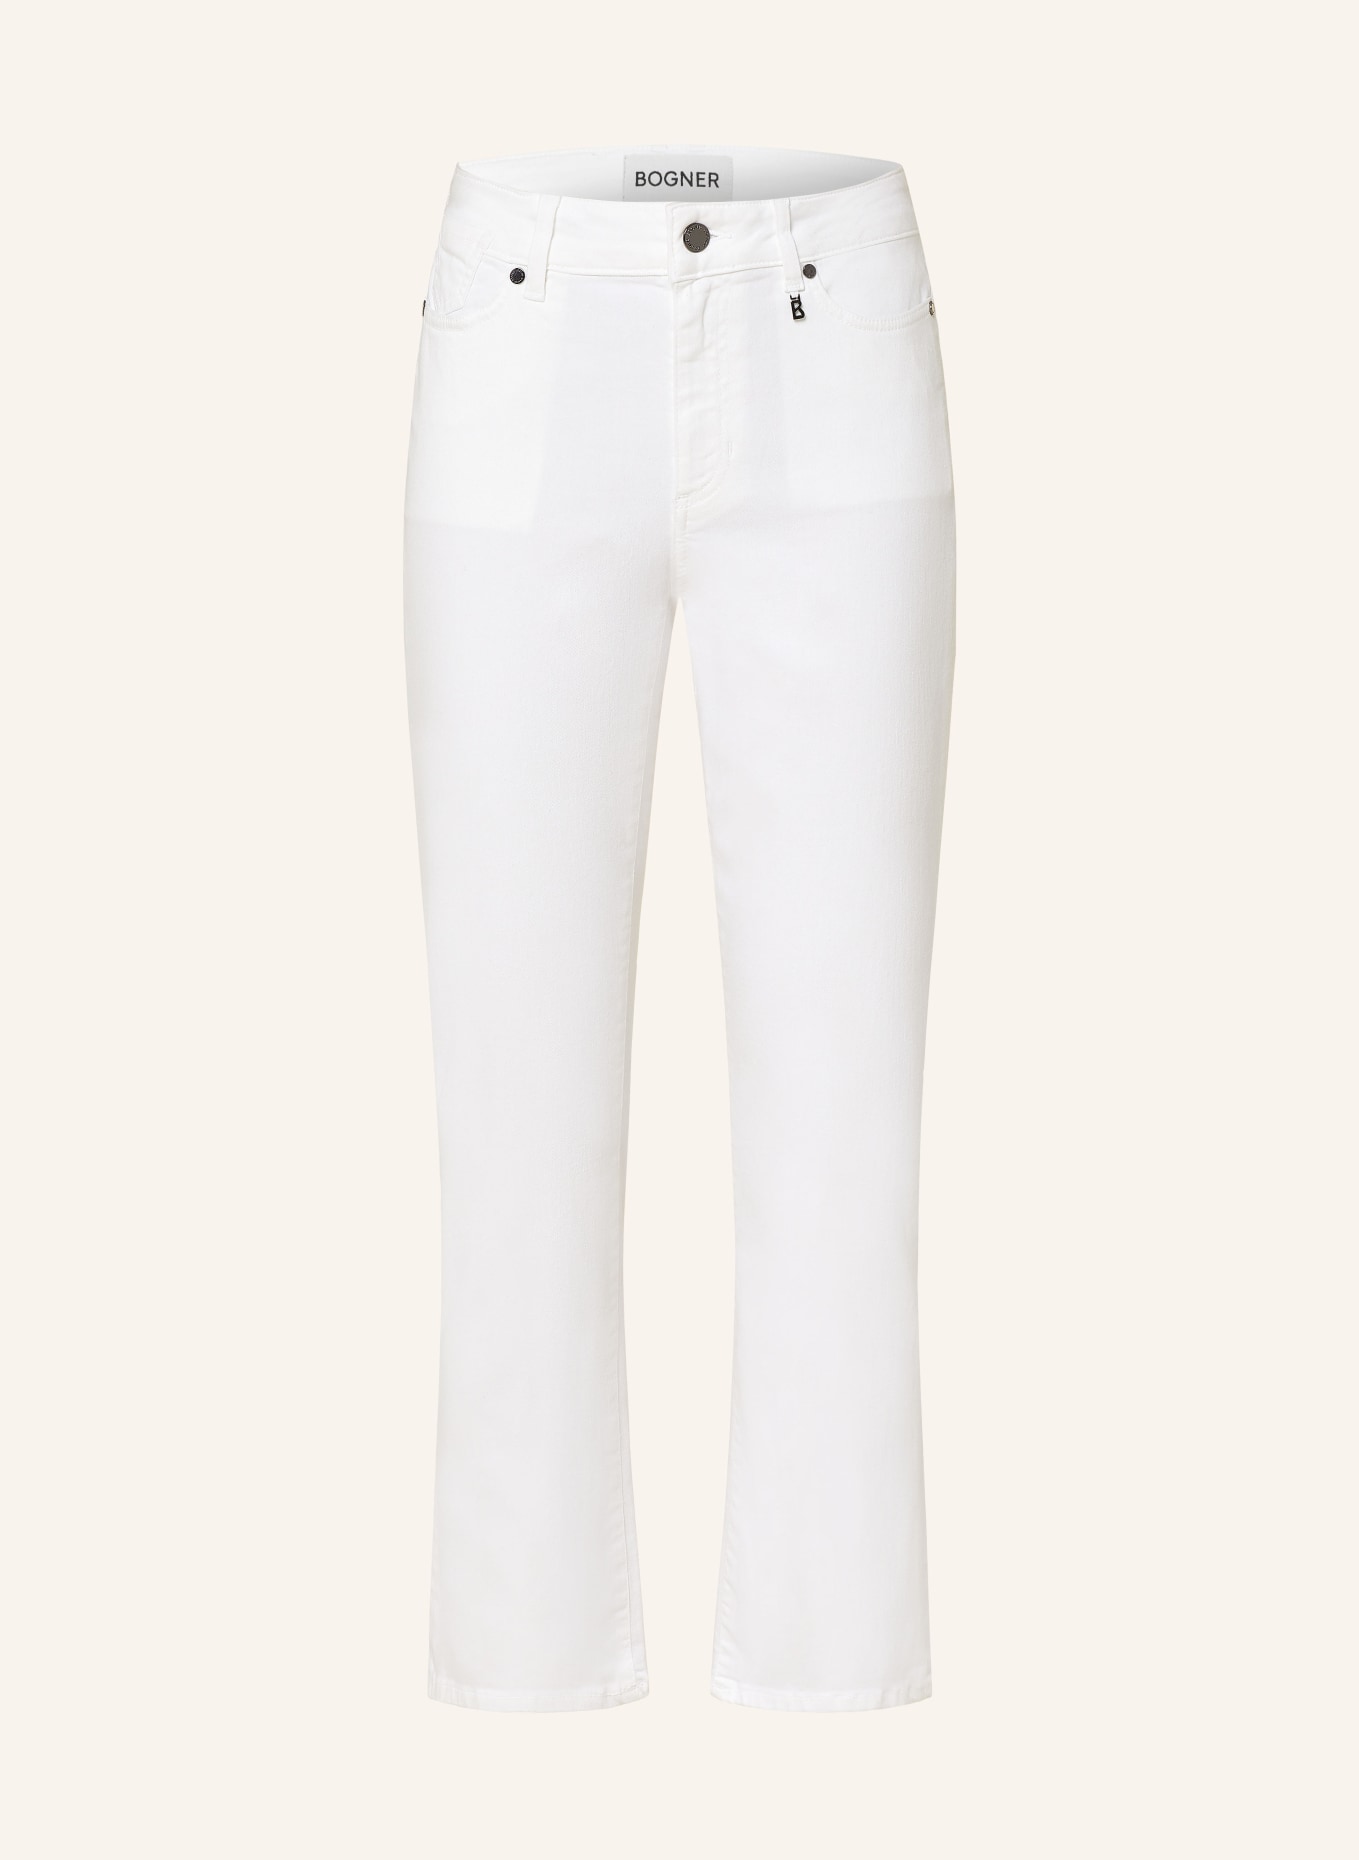 BOGNER 7/8-Jeans JULIE-CF, Farbe: 031 White (Bild 1)